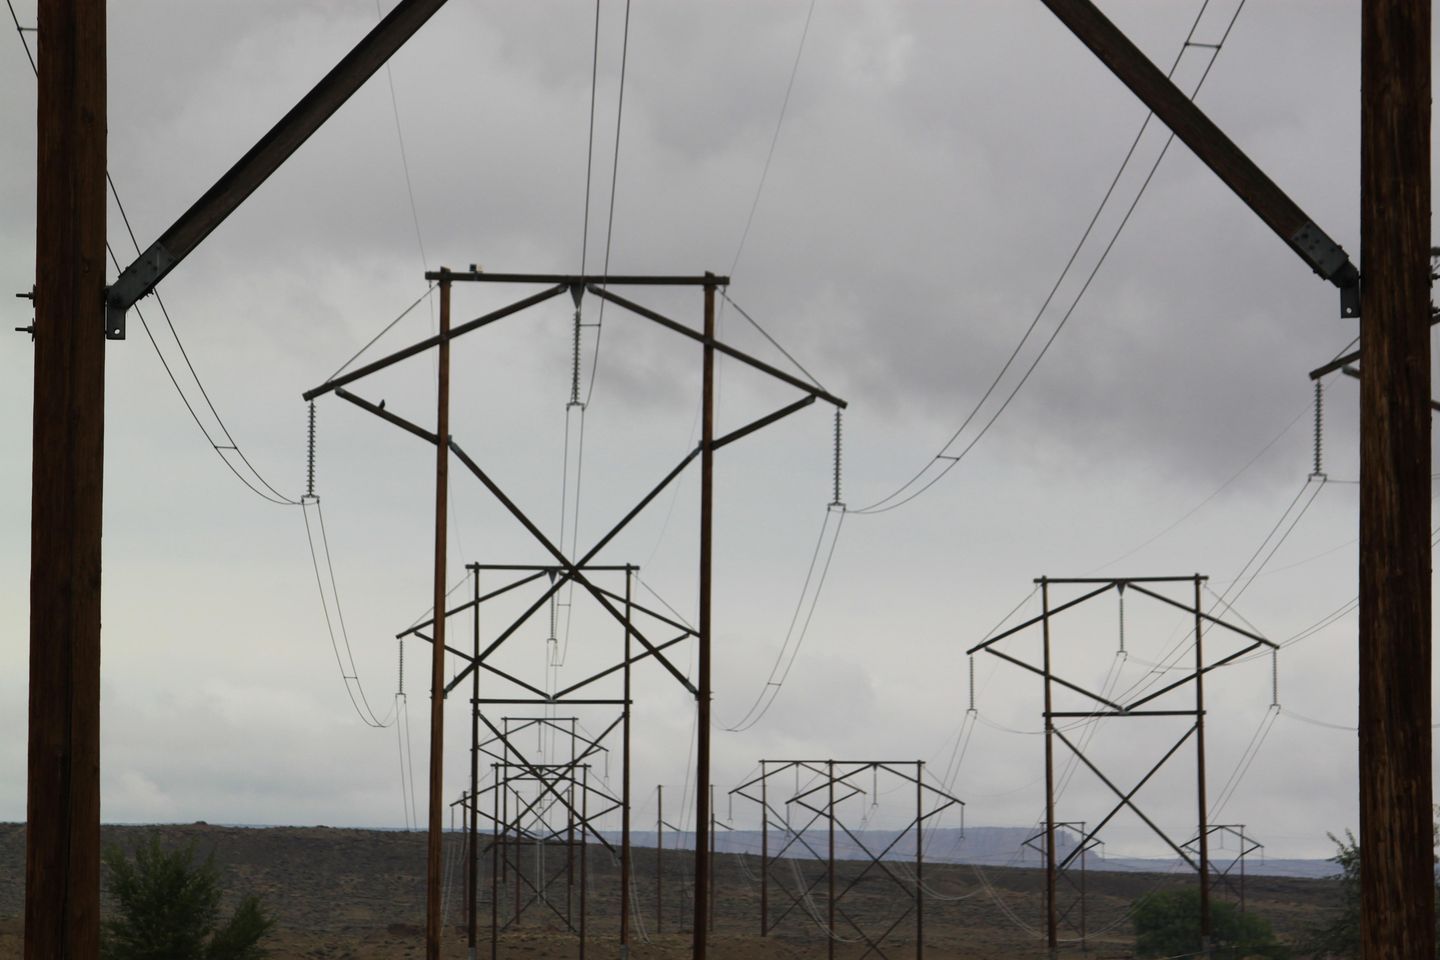 Serangan terhadap gardu listrik negara bagian Washington memutus aliran listrik menjadi 14.000